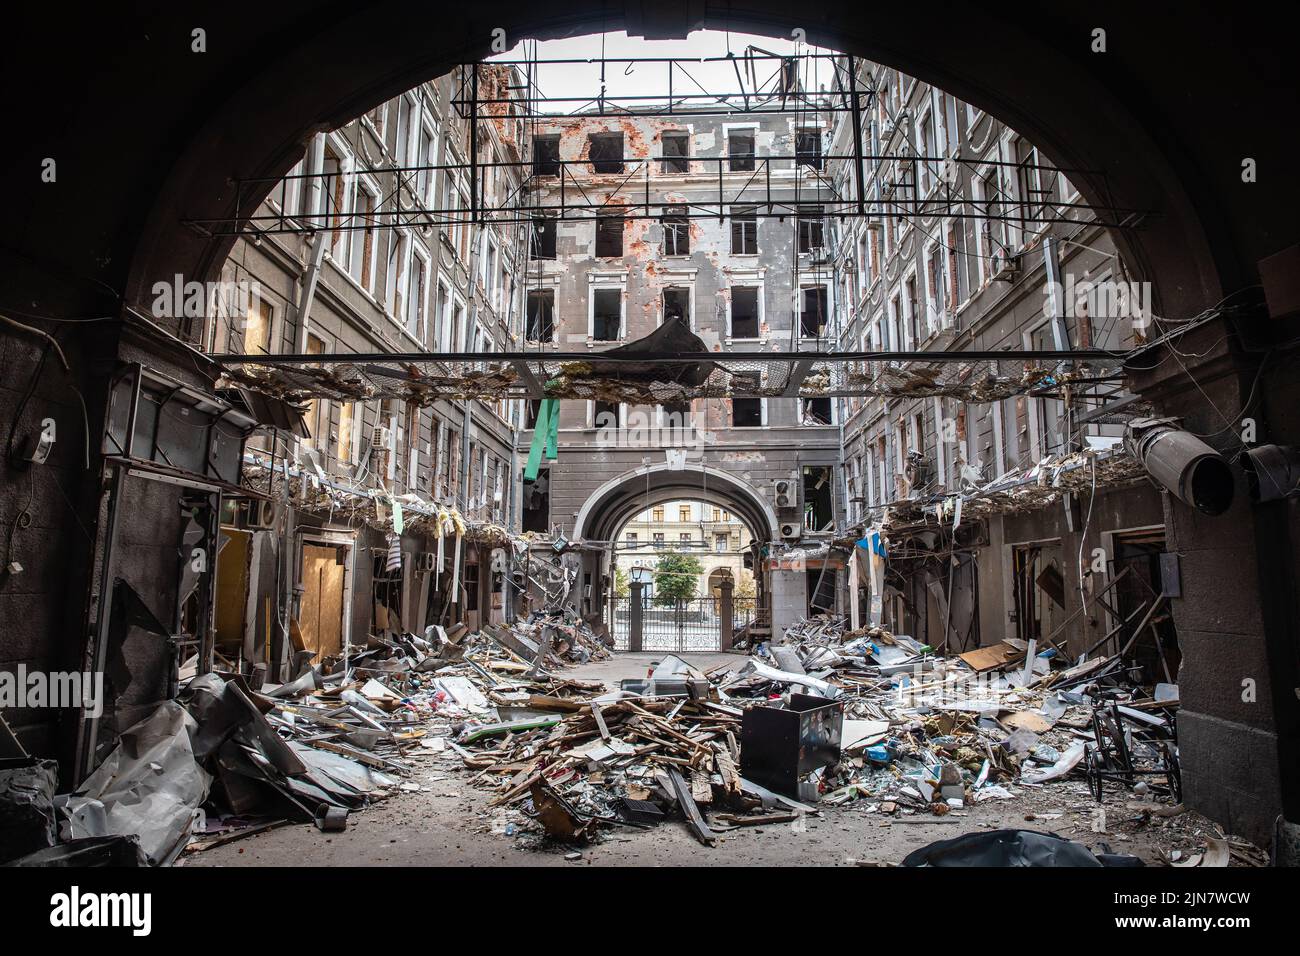 L'épave du bâtiment et les articles ménagers endommagés dans la cour. Bâtiment détruit dans le centre-ville historique de Kharkiv, Ukraine - 1 août 2022 Banque D'Images